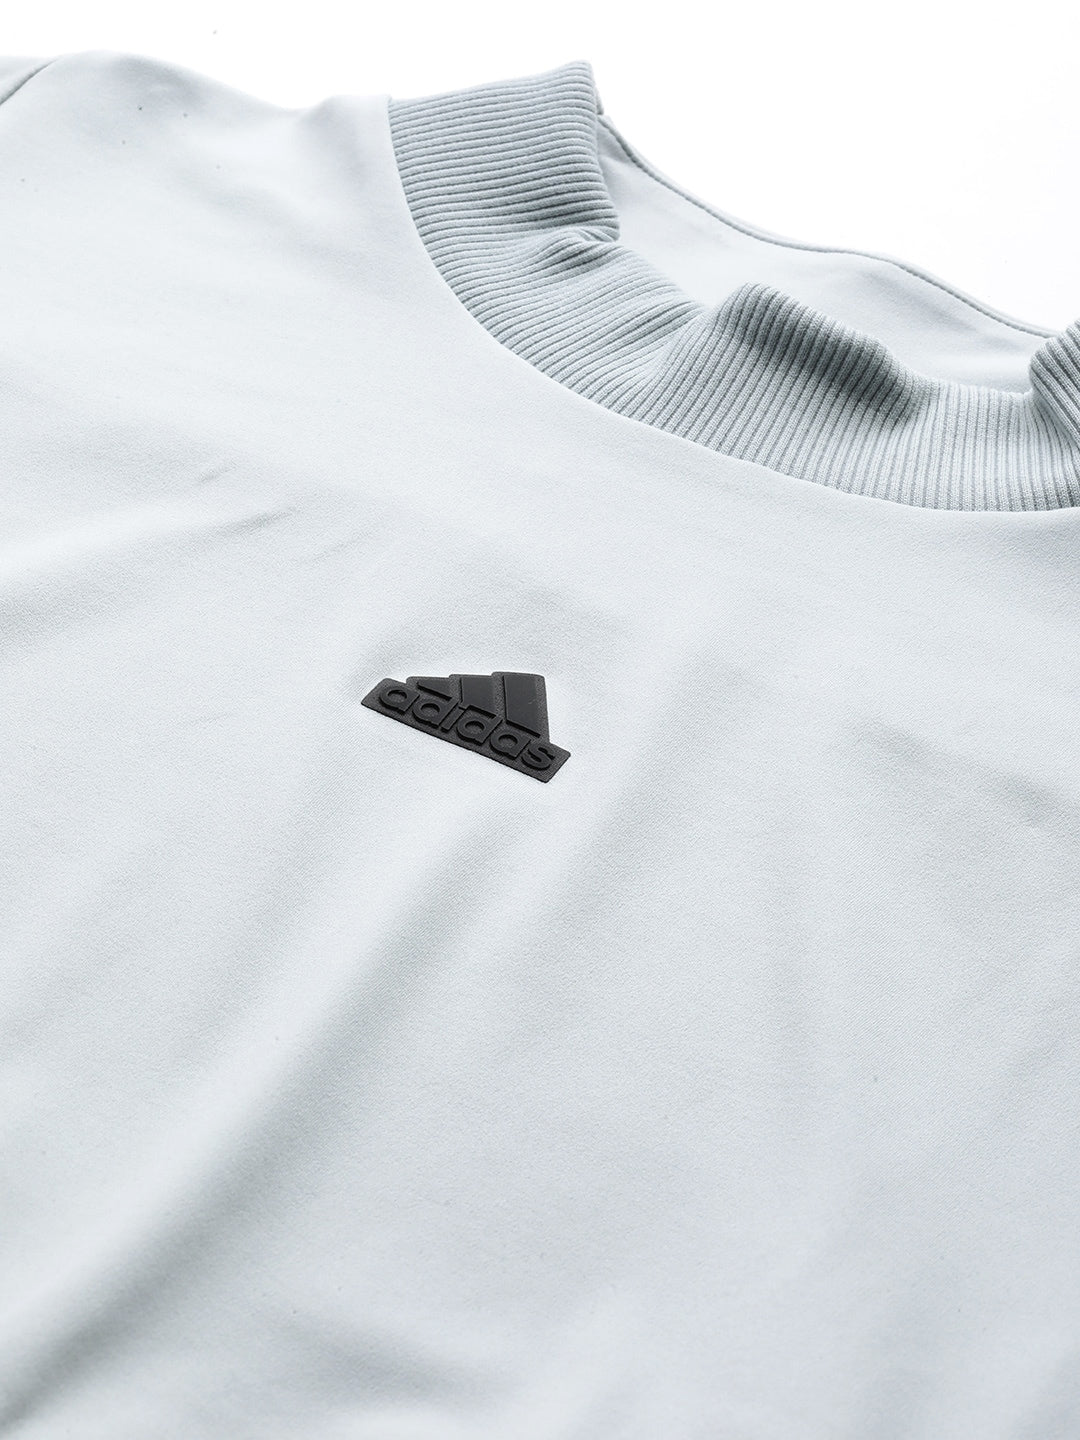 Adidas Z.N.E. Solid T-shirt - Distacart